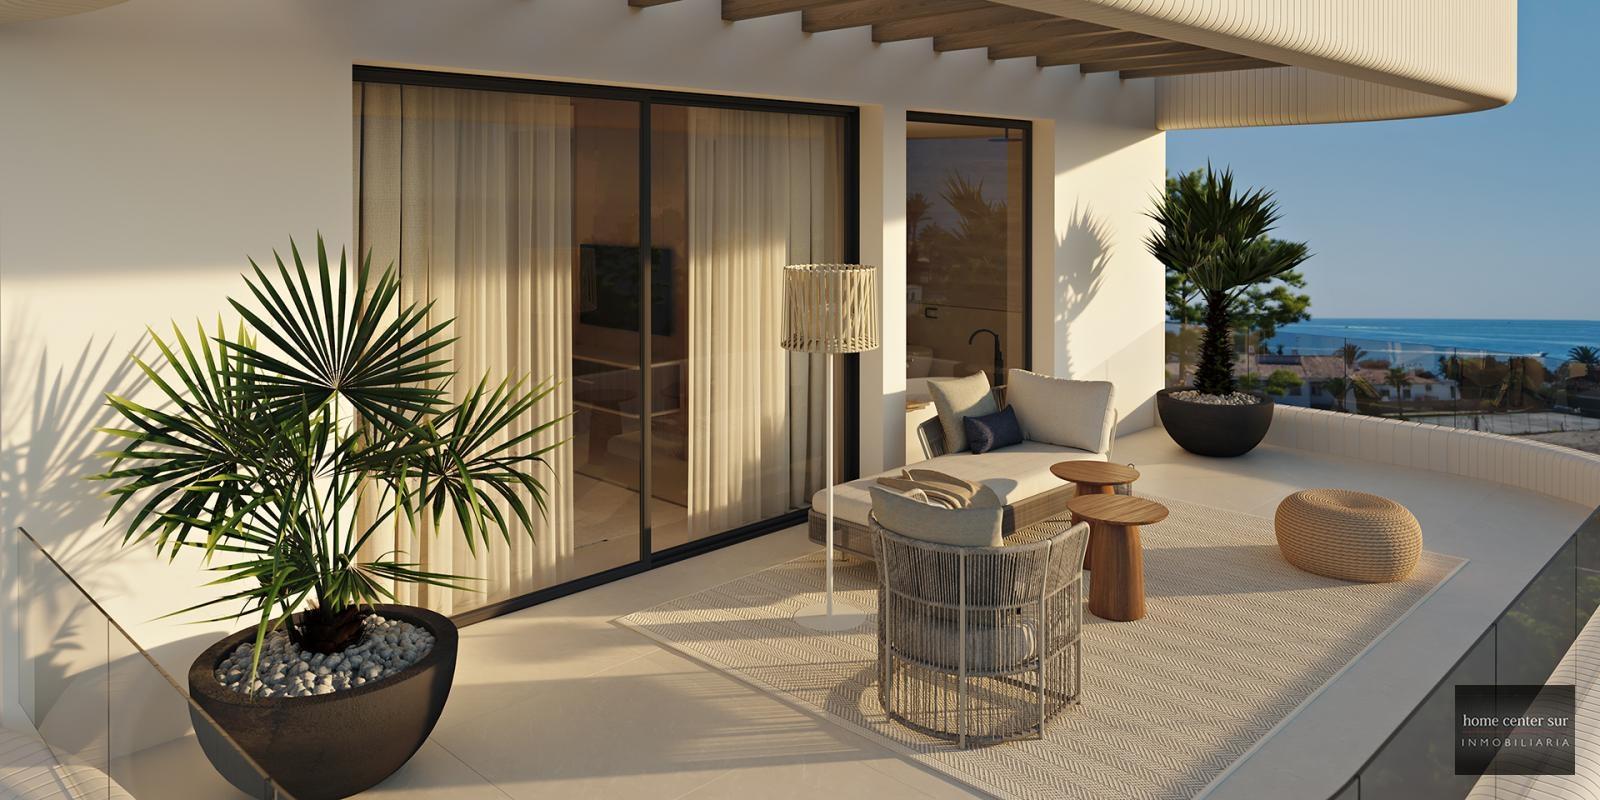 Villa de Lujo en venta en calle Bonanza 0 (Marbella), 2.950.000 €